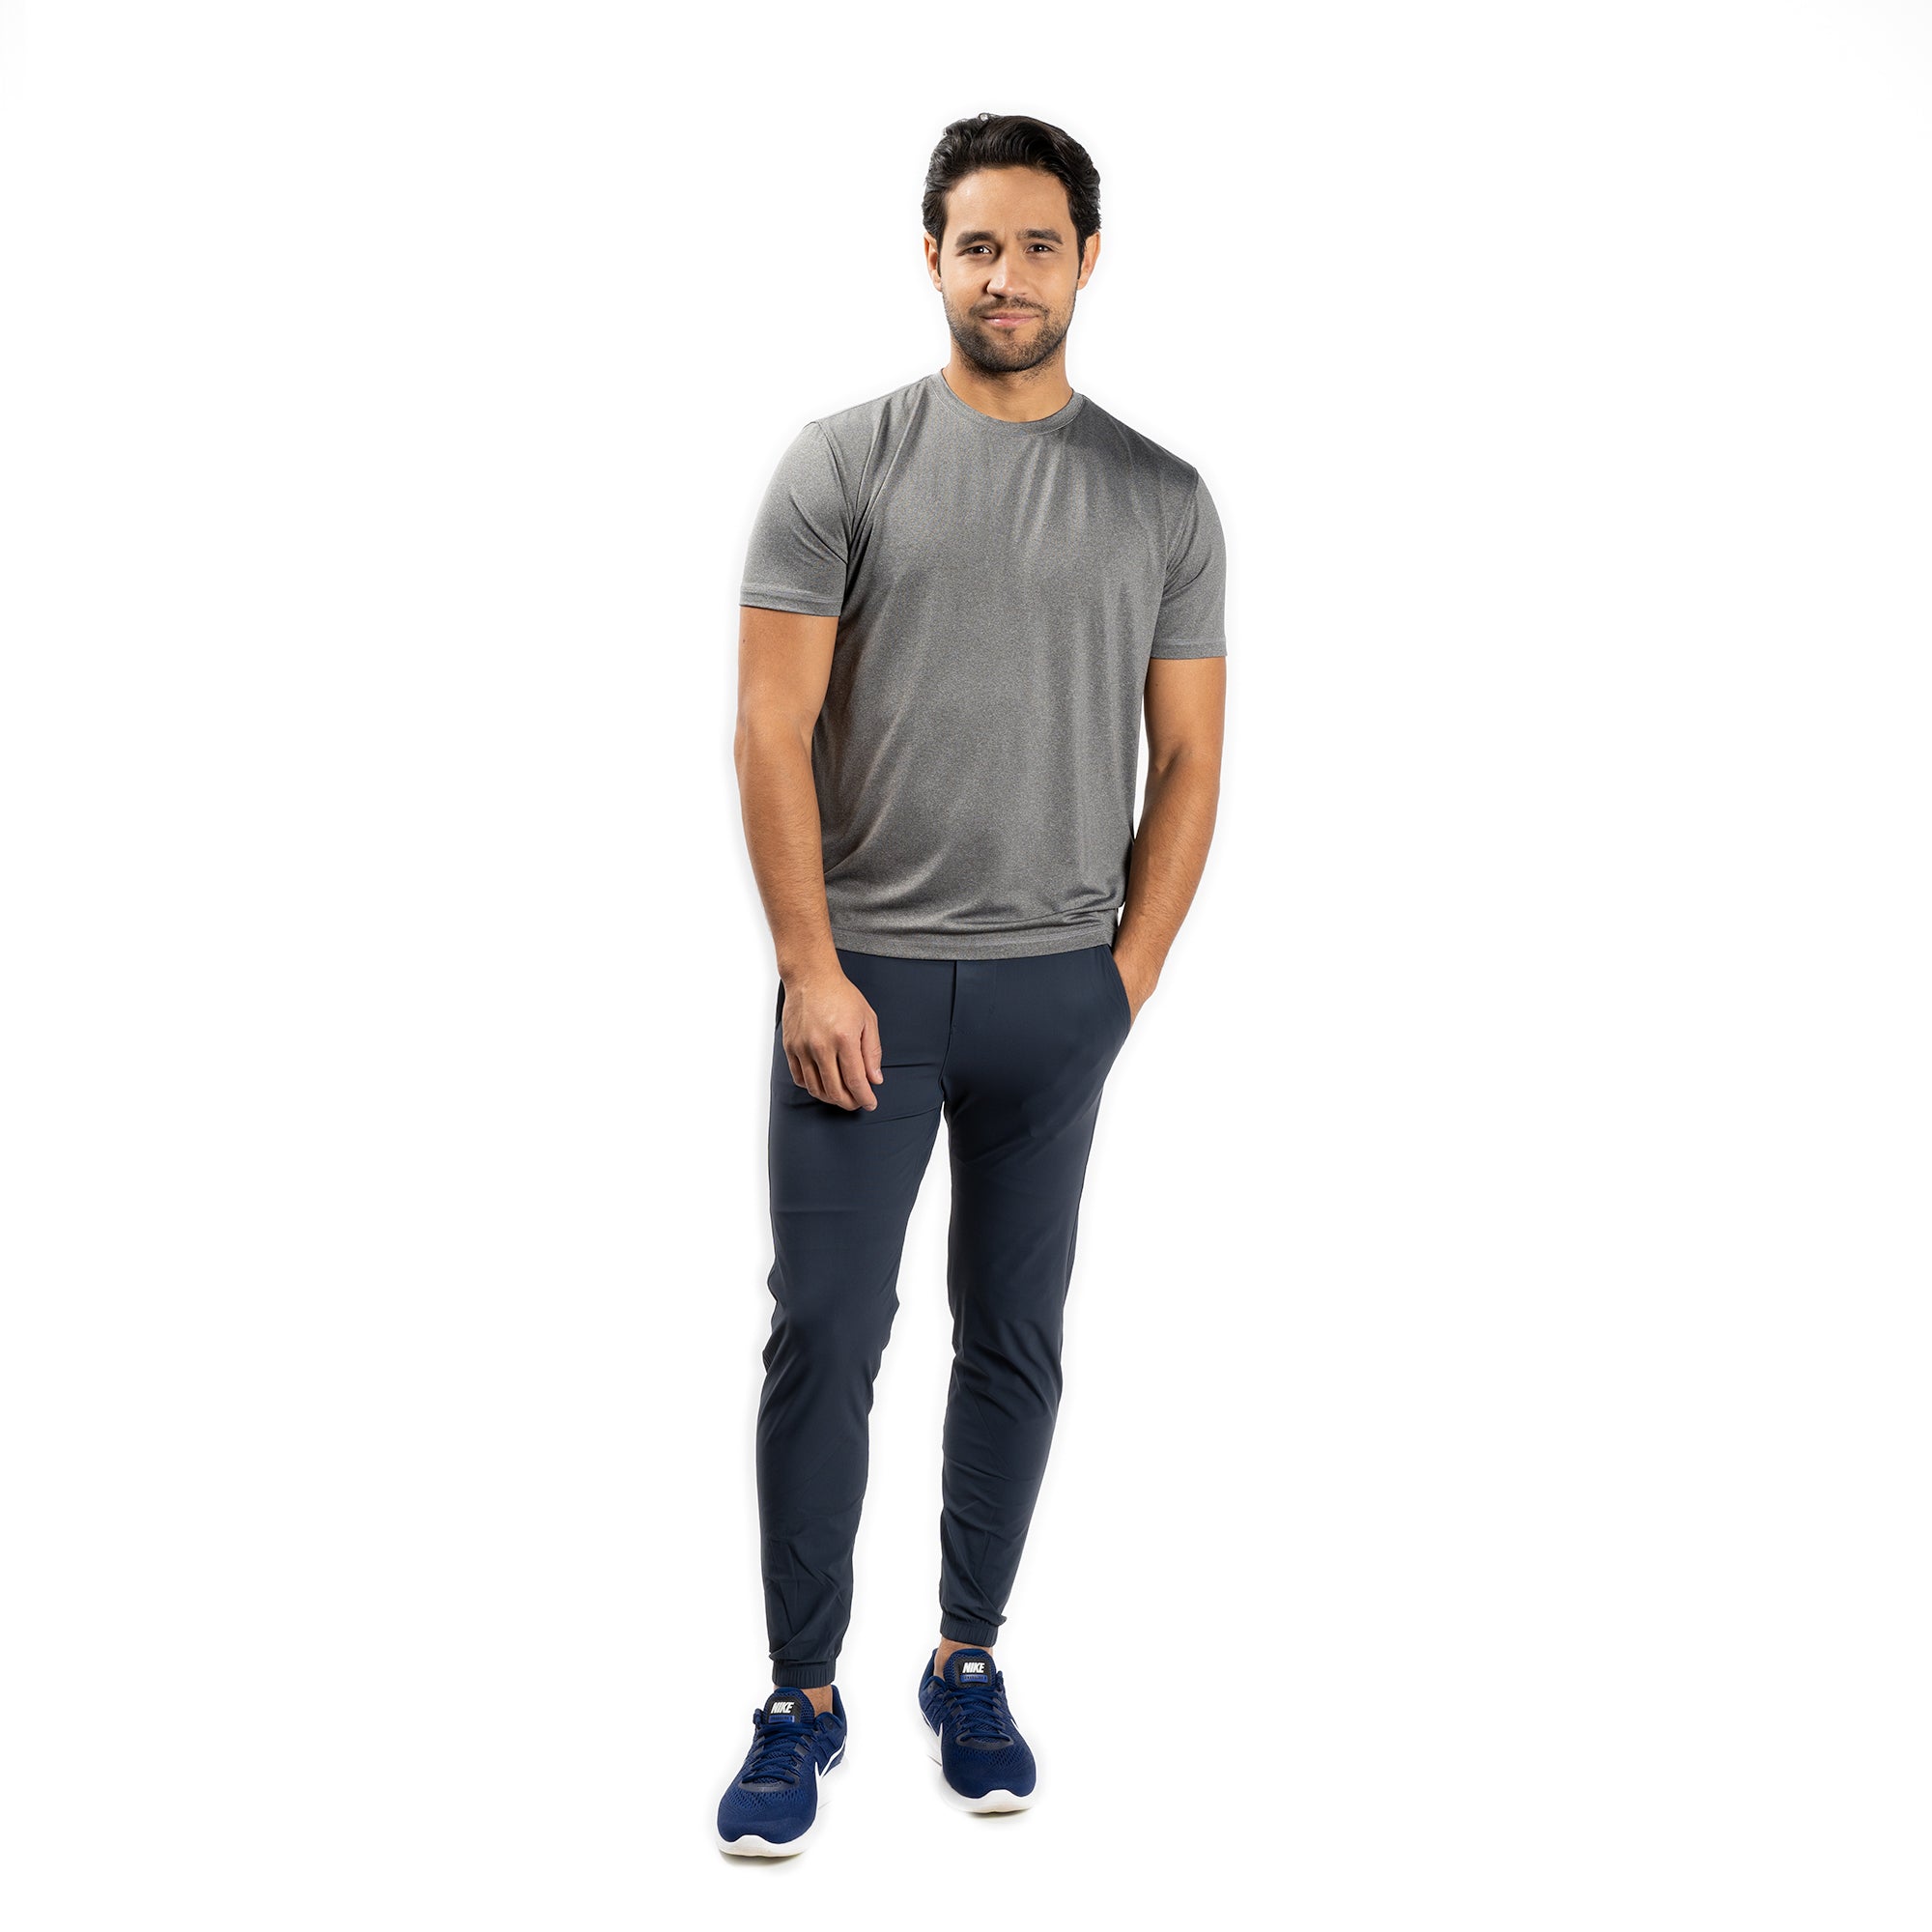 Workout Shirt - Grey